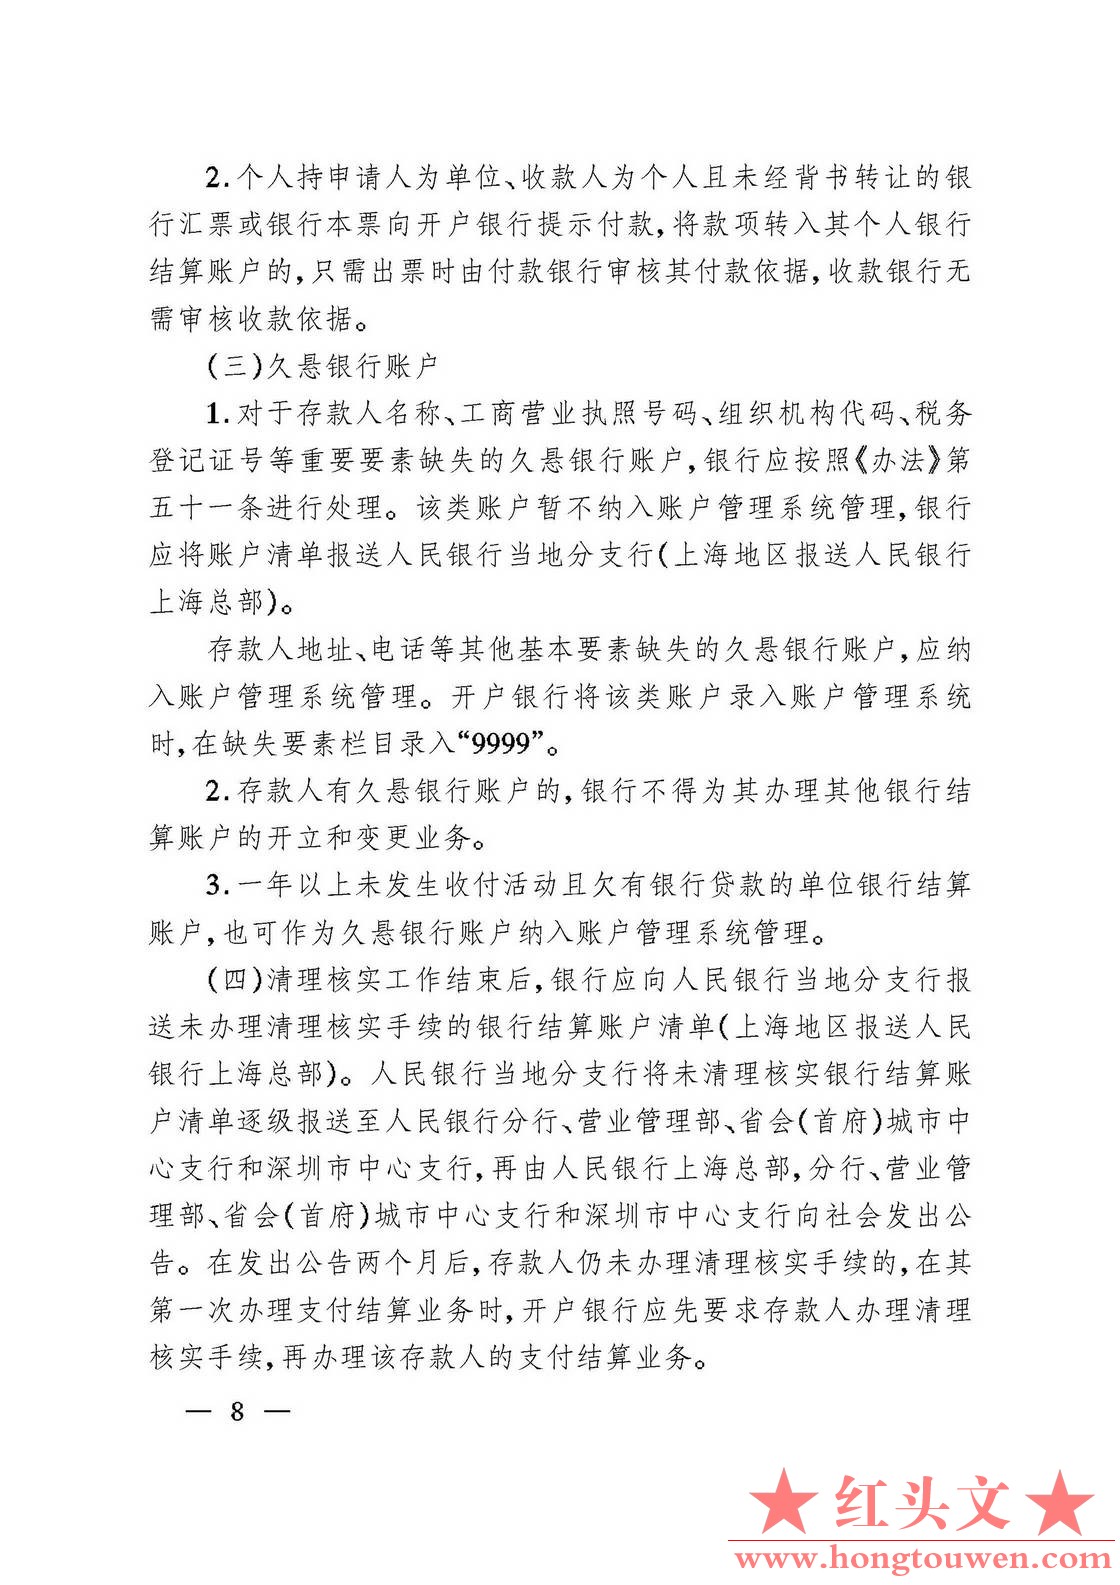 银发[2006]71号-中国人民银行关于规范人民币银行结算账户管理有关问题的通知_页面_08..jpg